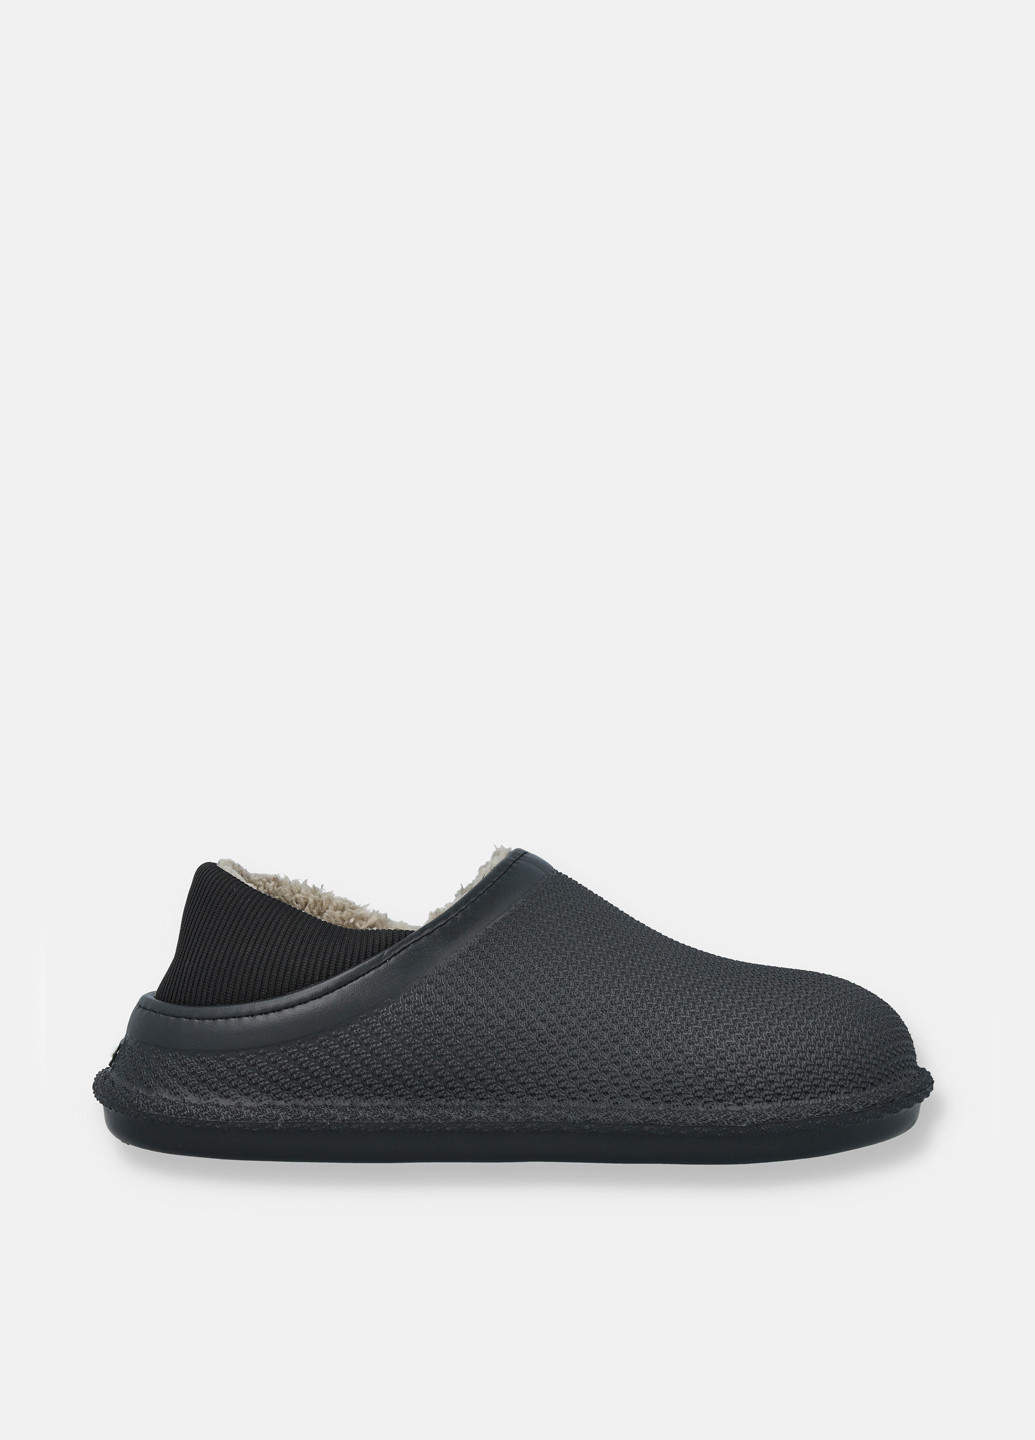 Черные резиновые ботинки GaLosha